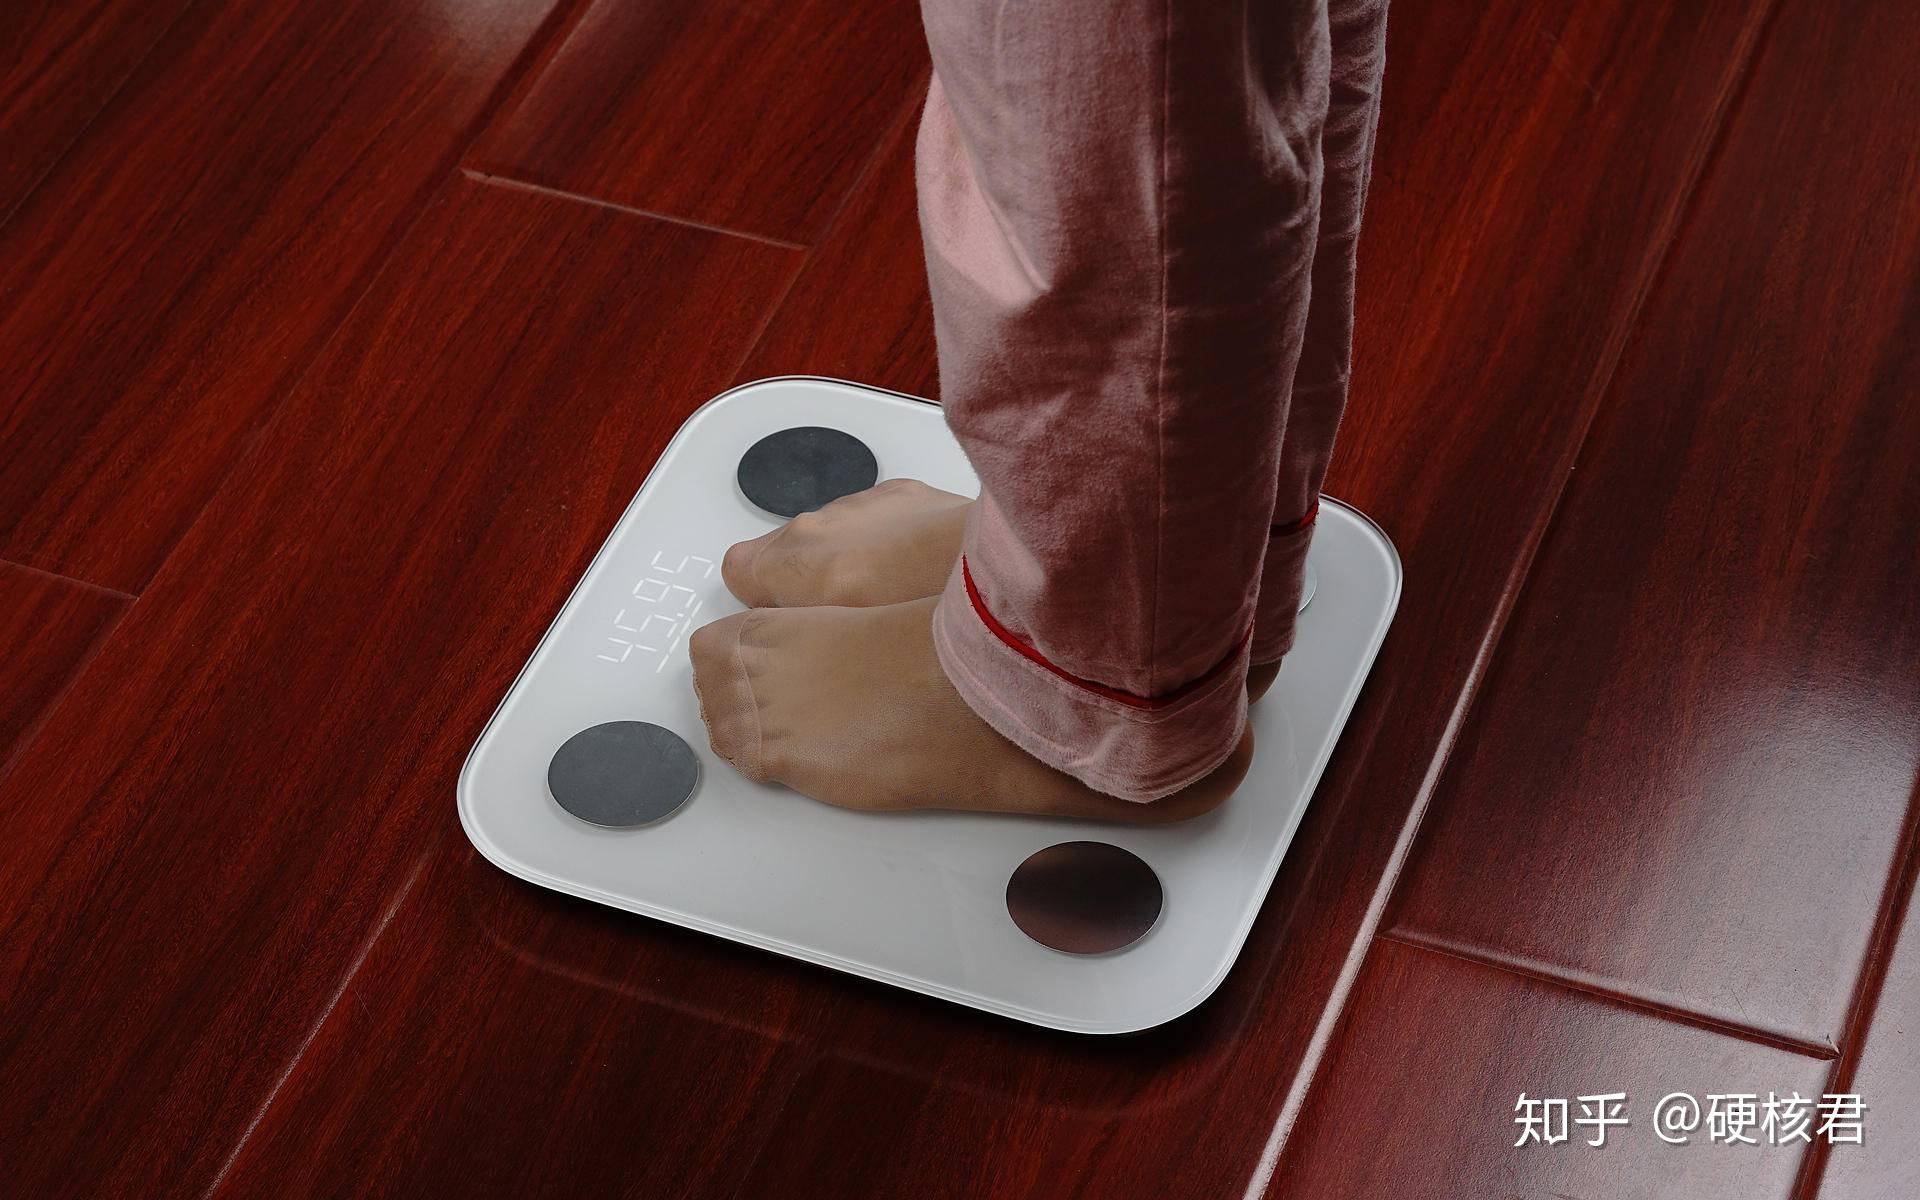 新款创意智能体重秤卡通迷你电子秤家用人体健康体重秤现货供应-阿里巴巴